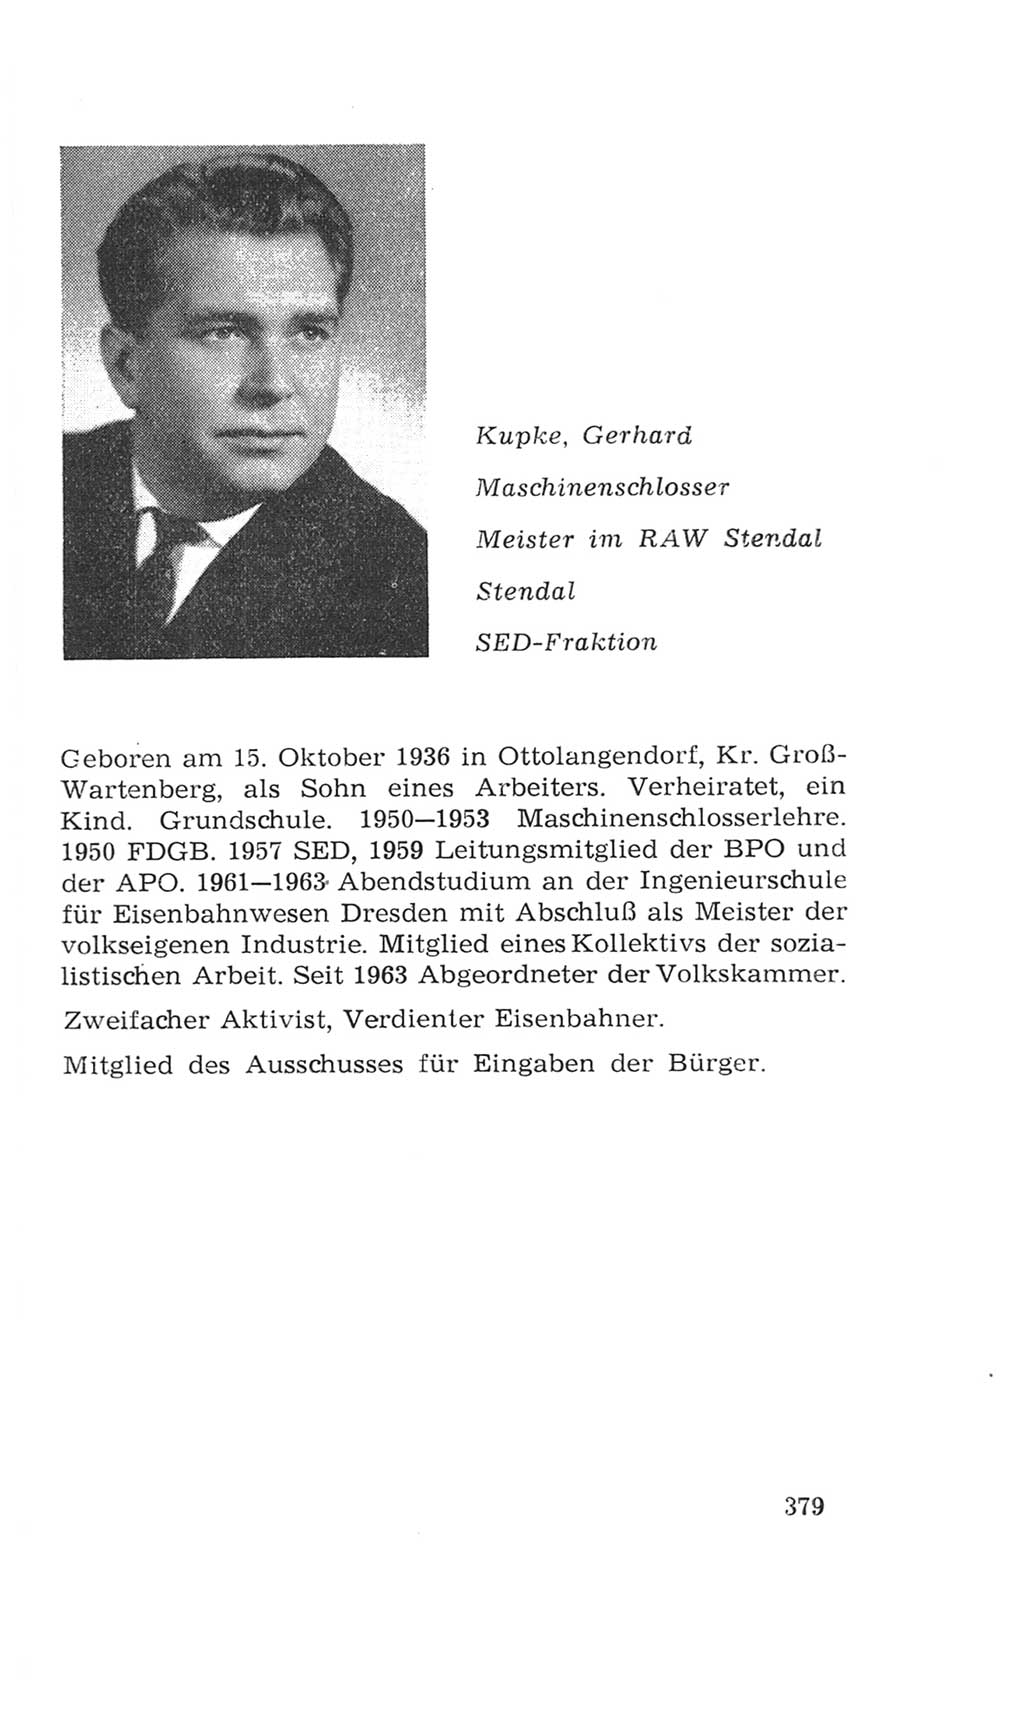 Volkskammer (VK) der Deutschen Demokratischen Republik (DDR), 4. Wahlperiode 1963-1967, Seite 379 (VK. DDR 4. WP. 1963-1967, S. 379)